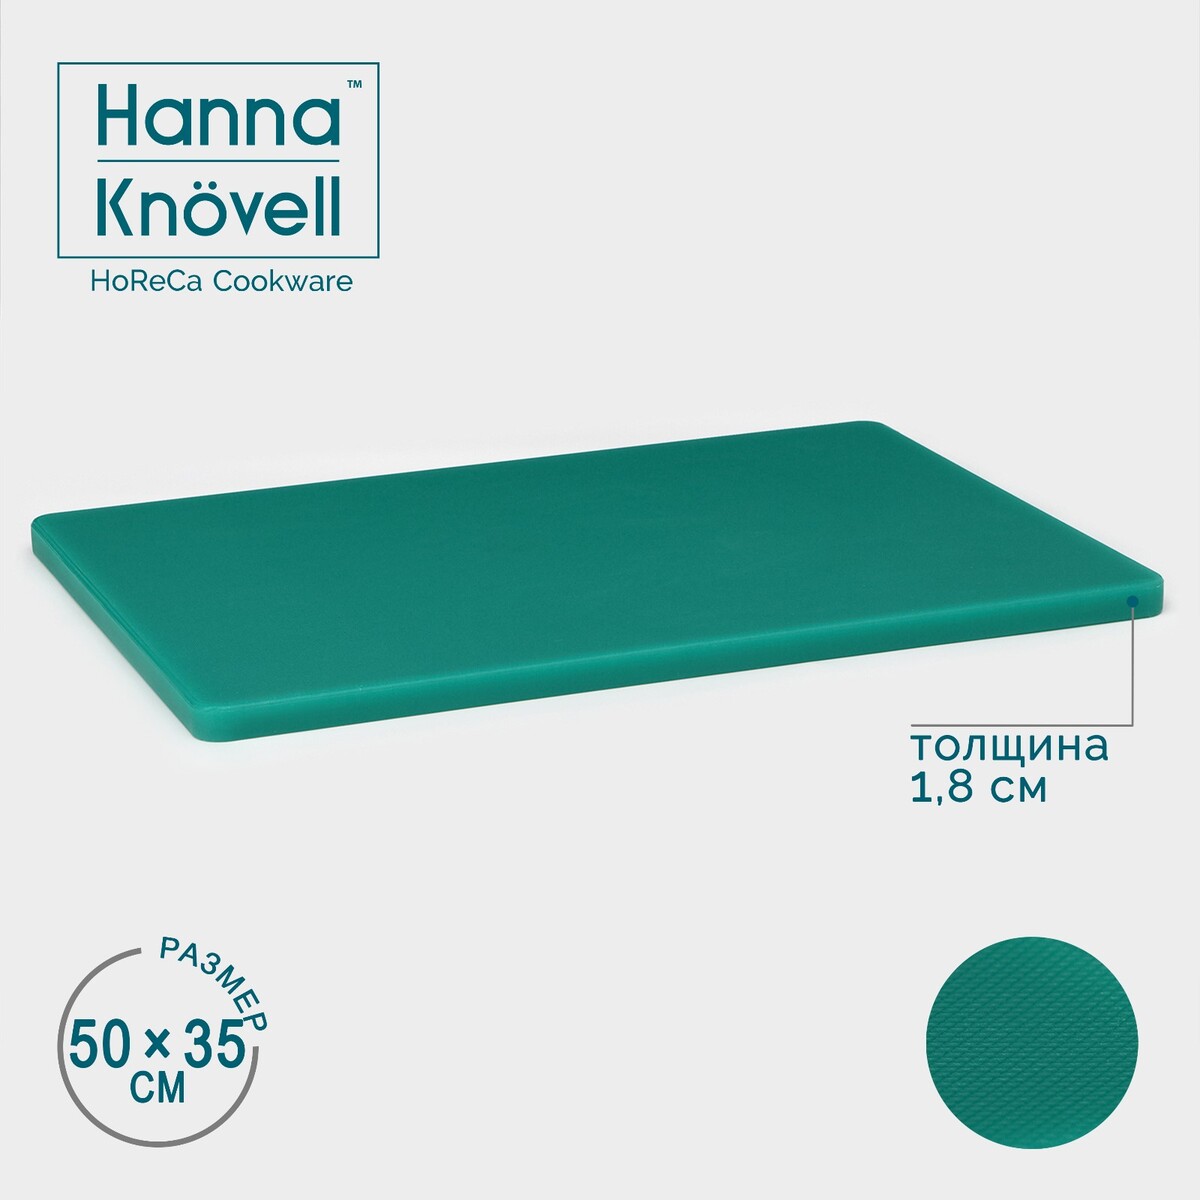 Доска профессиональная разделочная hanna knövell, 50×35×1,8 см, цвет зеленый